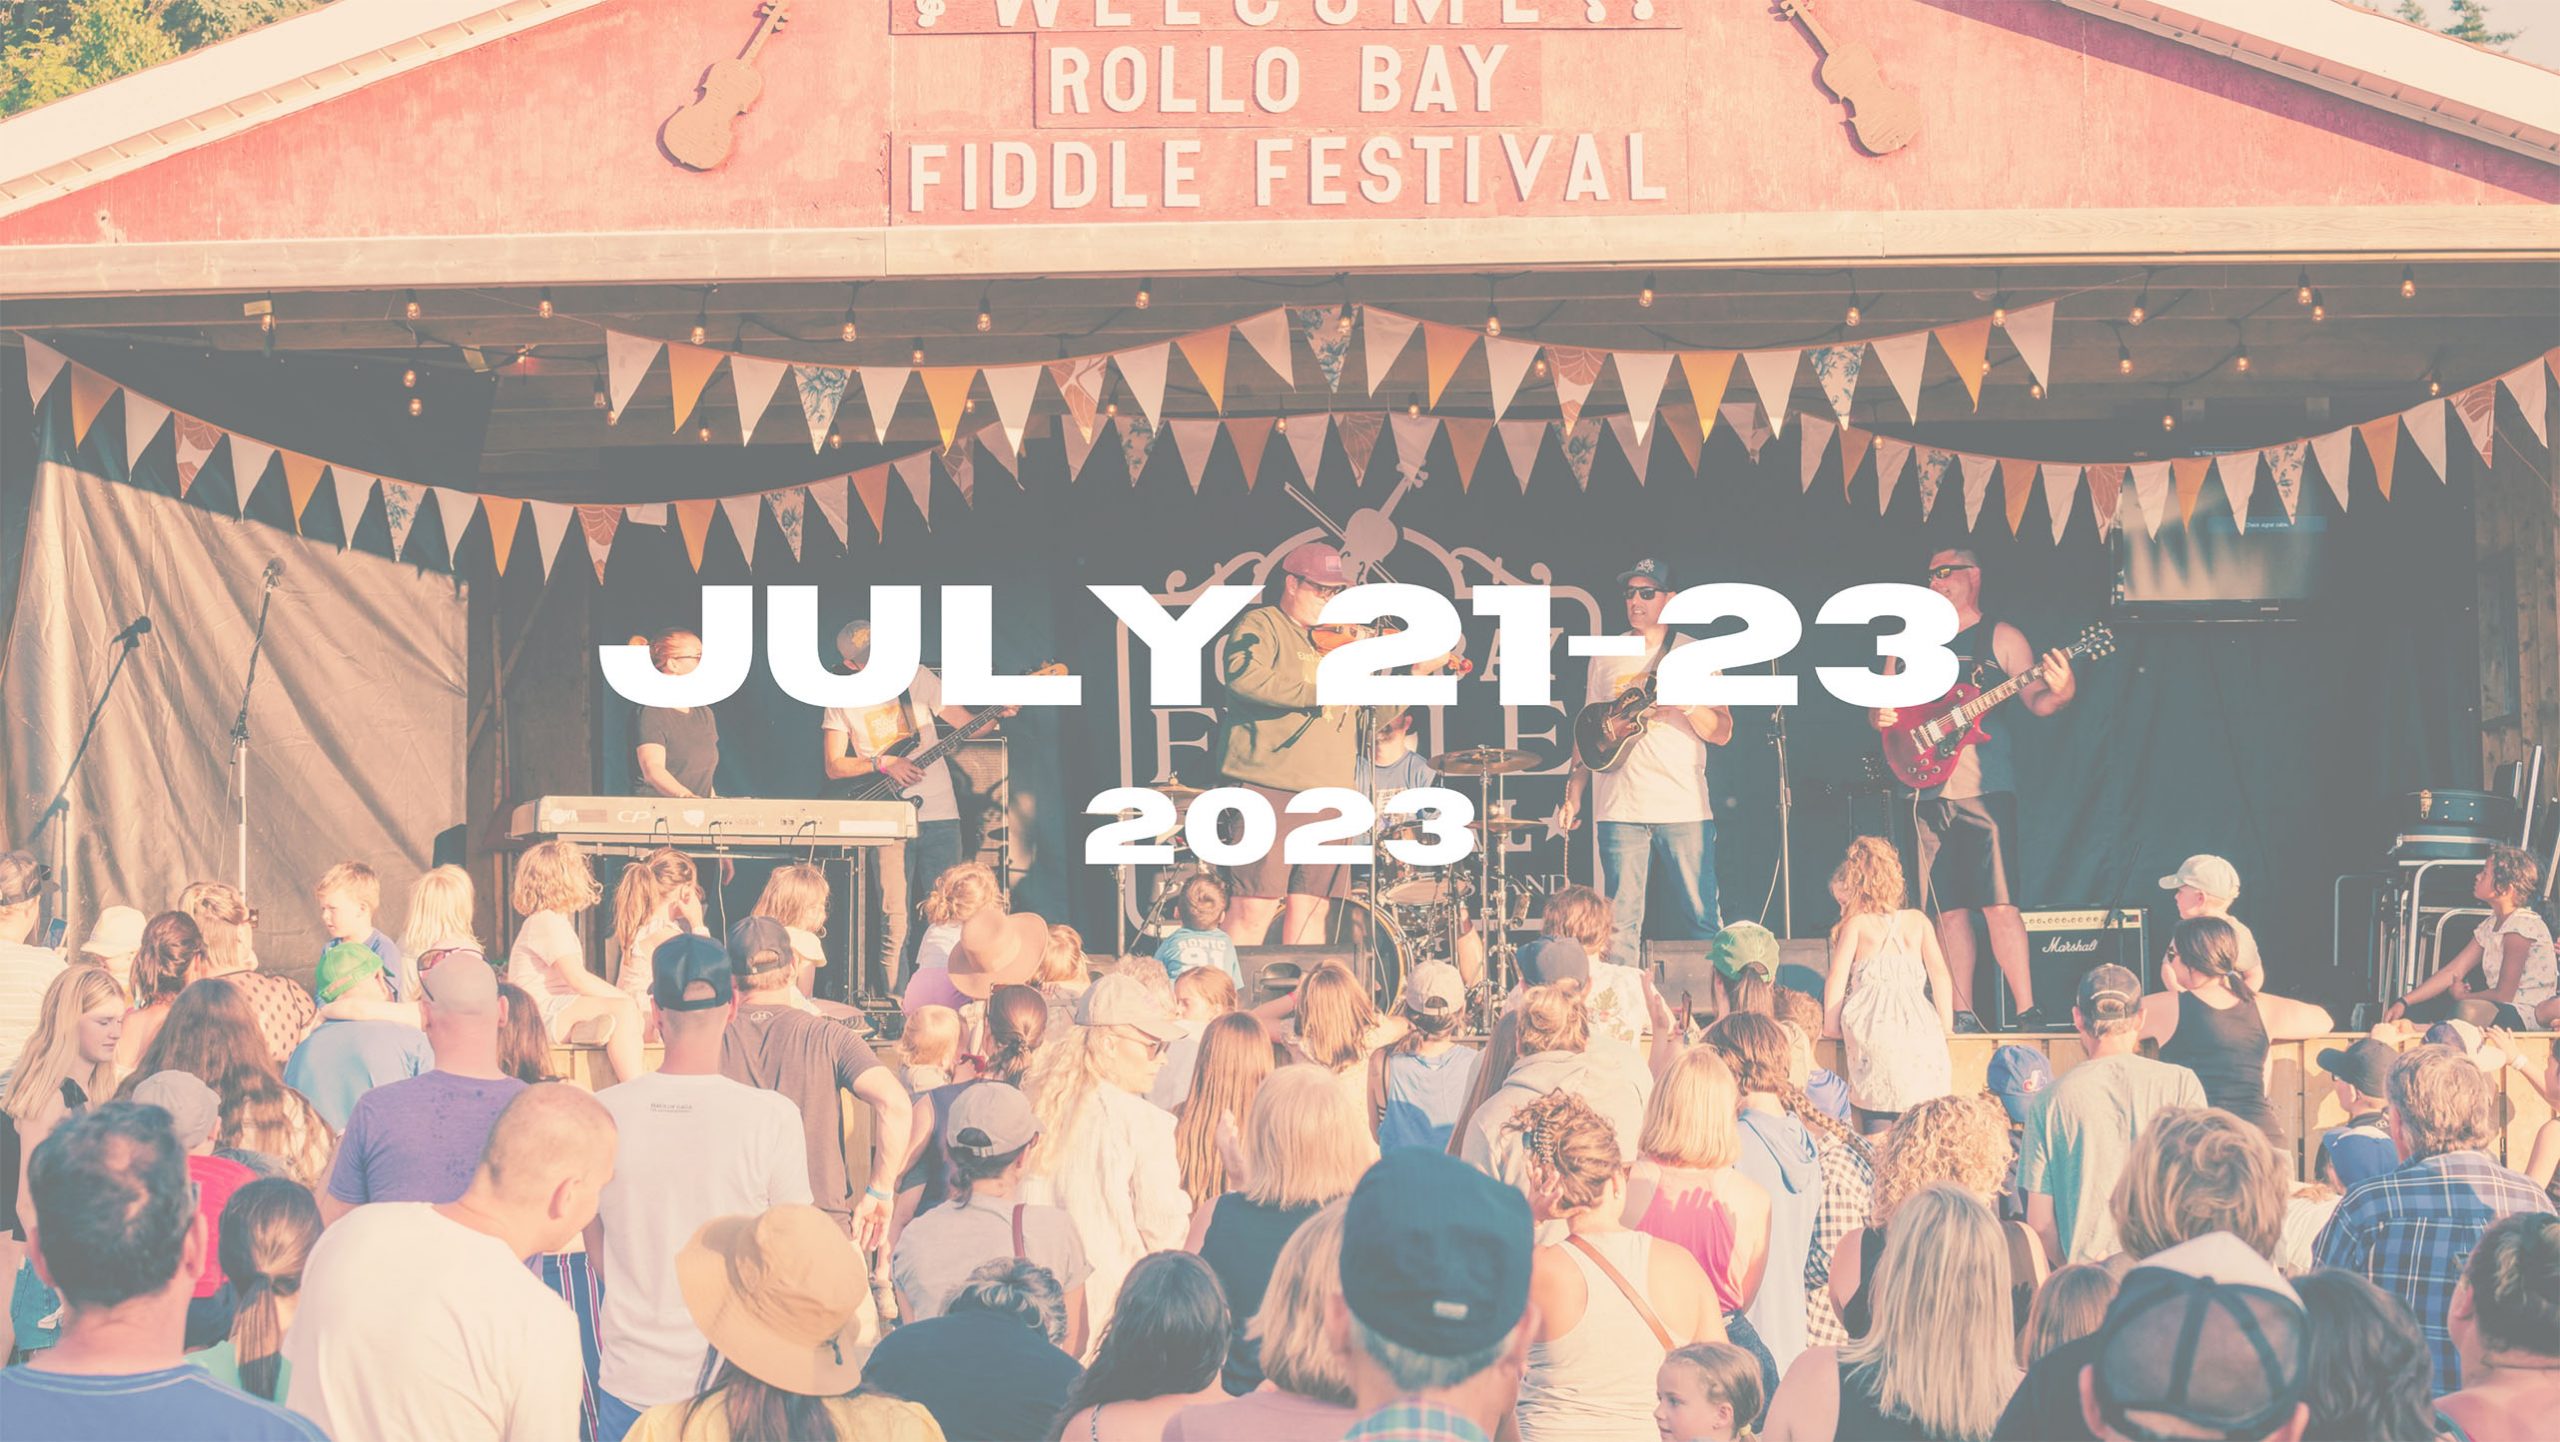 Rollo Bay Fiddle Festival 3rd Weekend In July